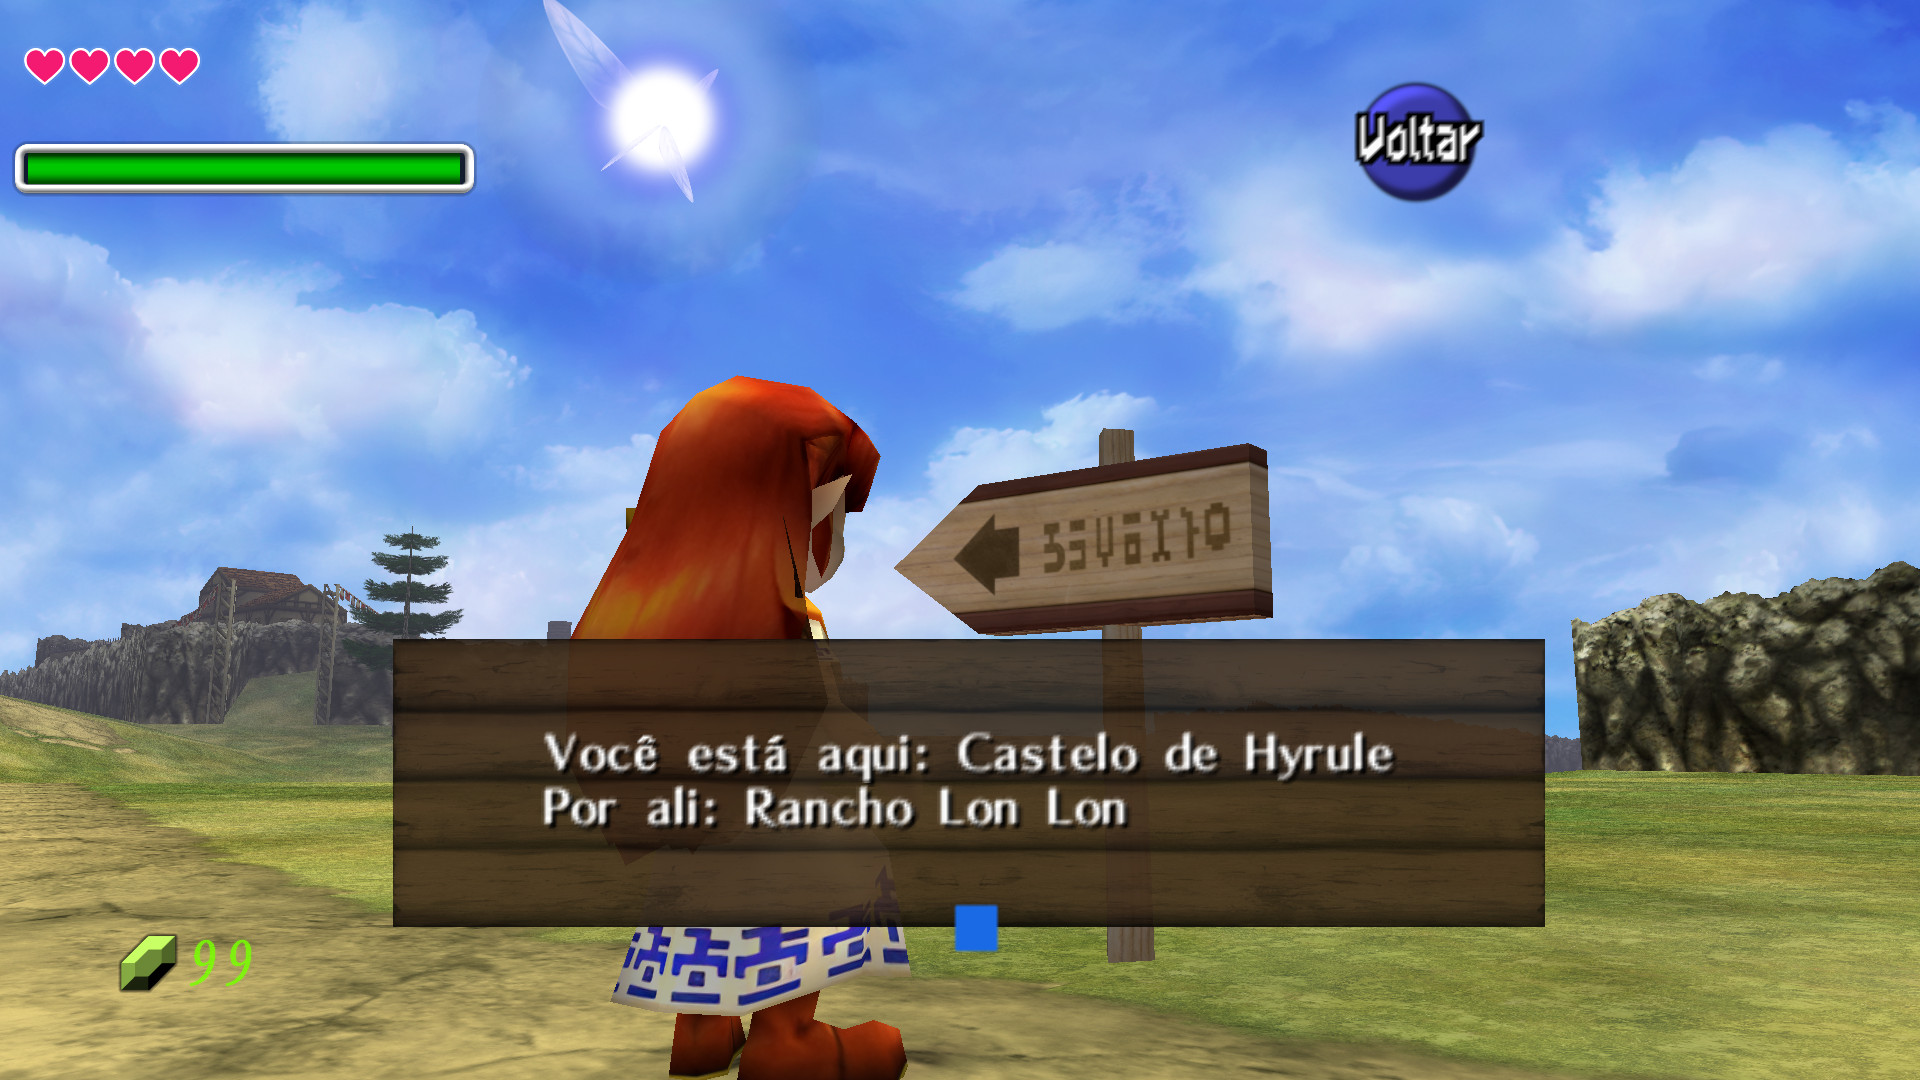 TRADUÇÃO PT-BR] A Lenda de Zelda: Ocarina do Tempo 3D [3DS